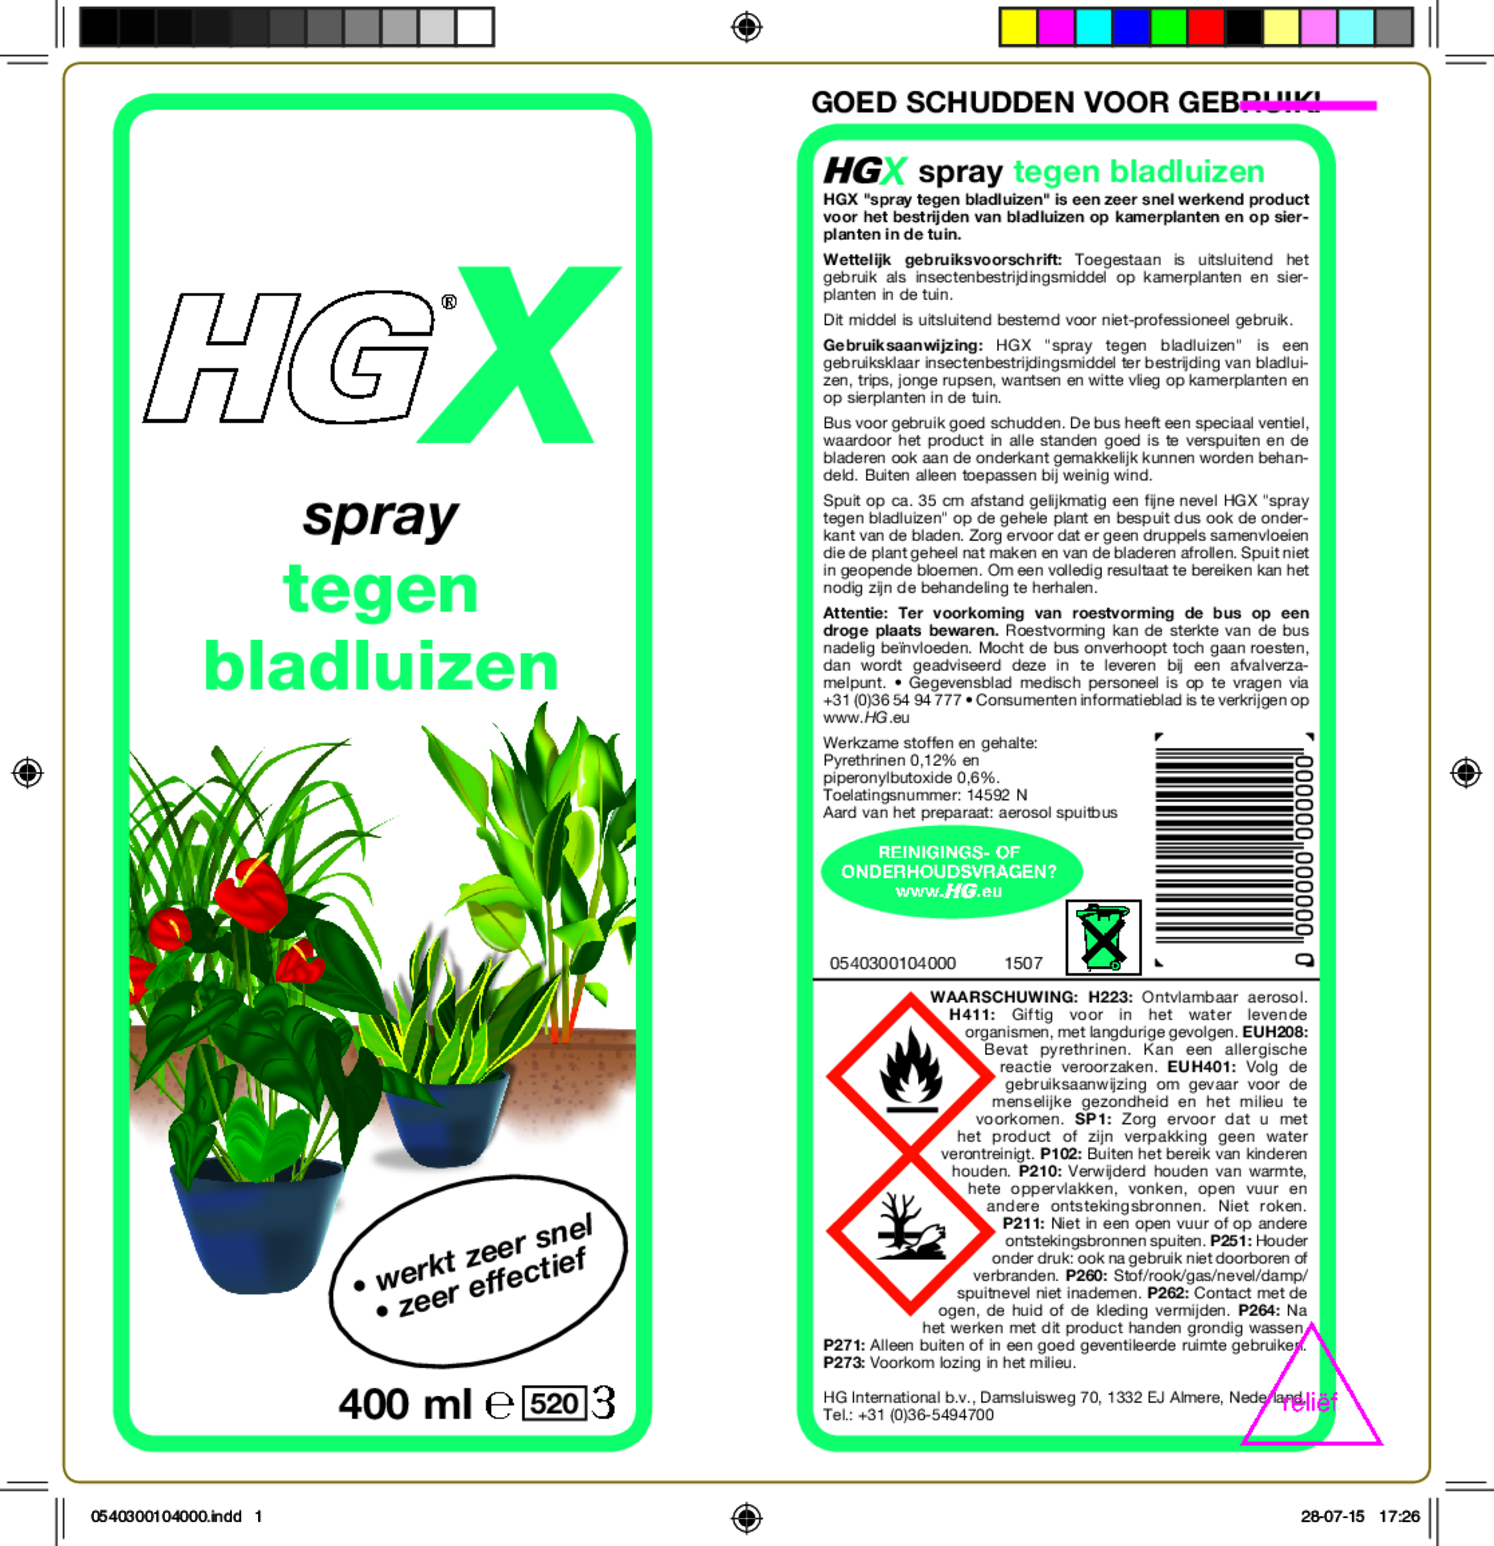 X Spray Tegen Bladluizen afbeelding van document #1, etiket